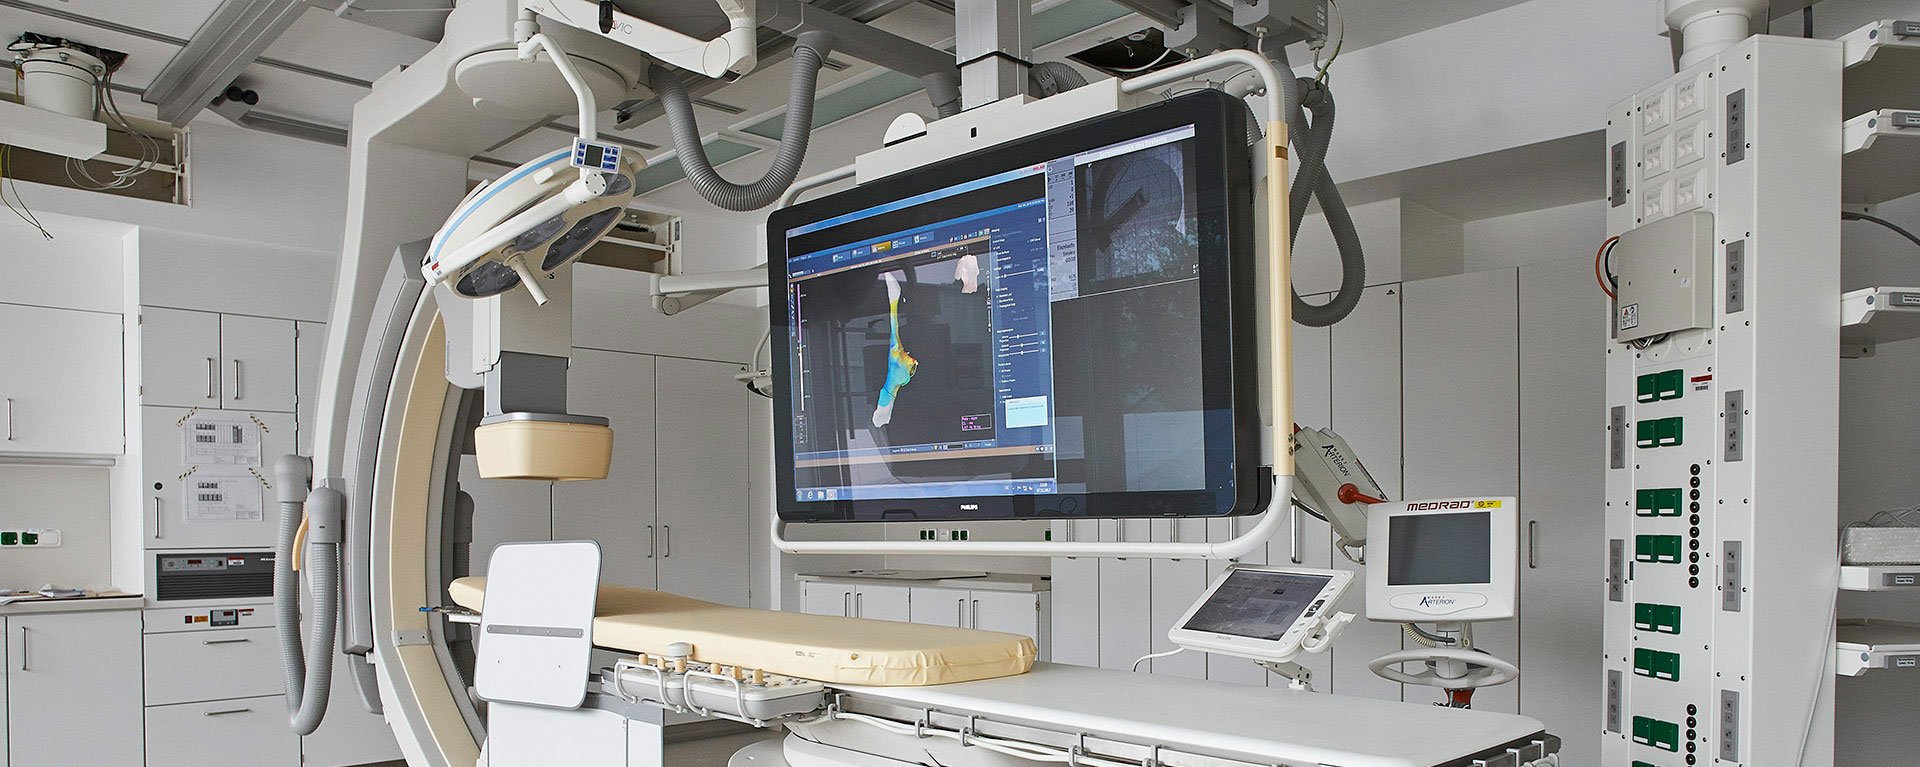 Behandlungsraum im Herz- & Gefäßzentrum Kempten-Oberallgäu mit einem großen Screen über der Behandlungsliege